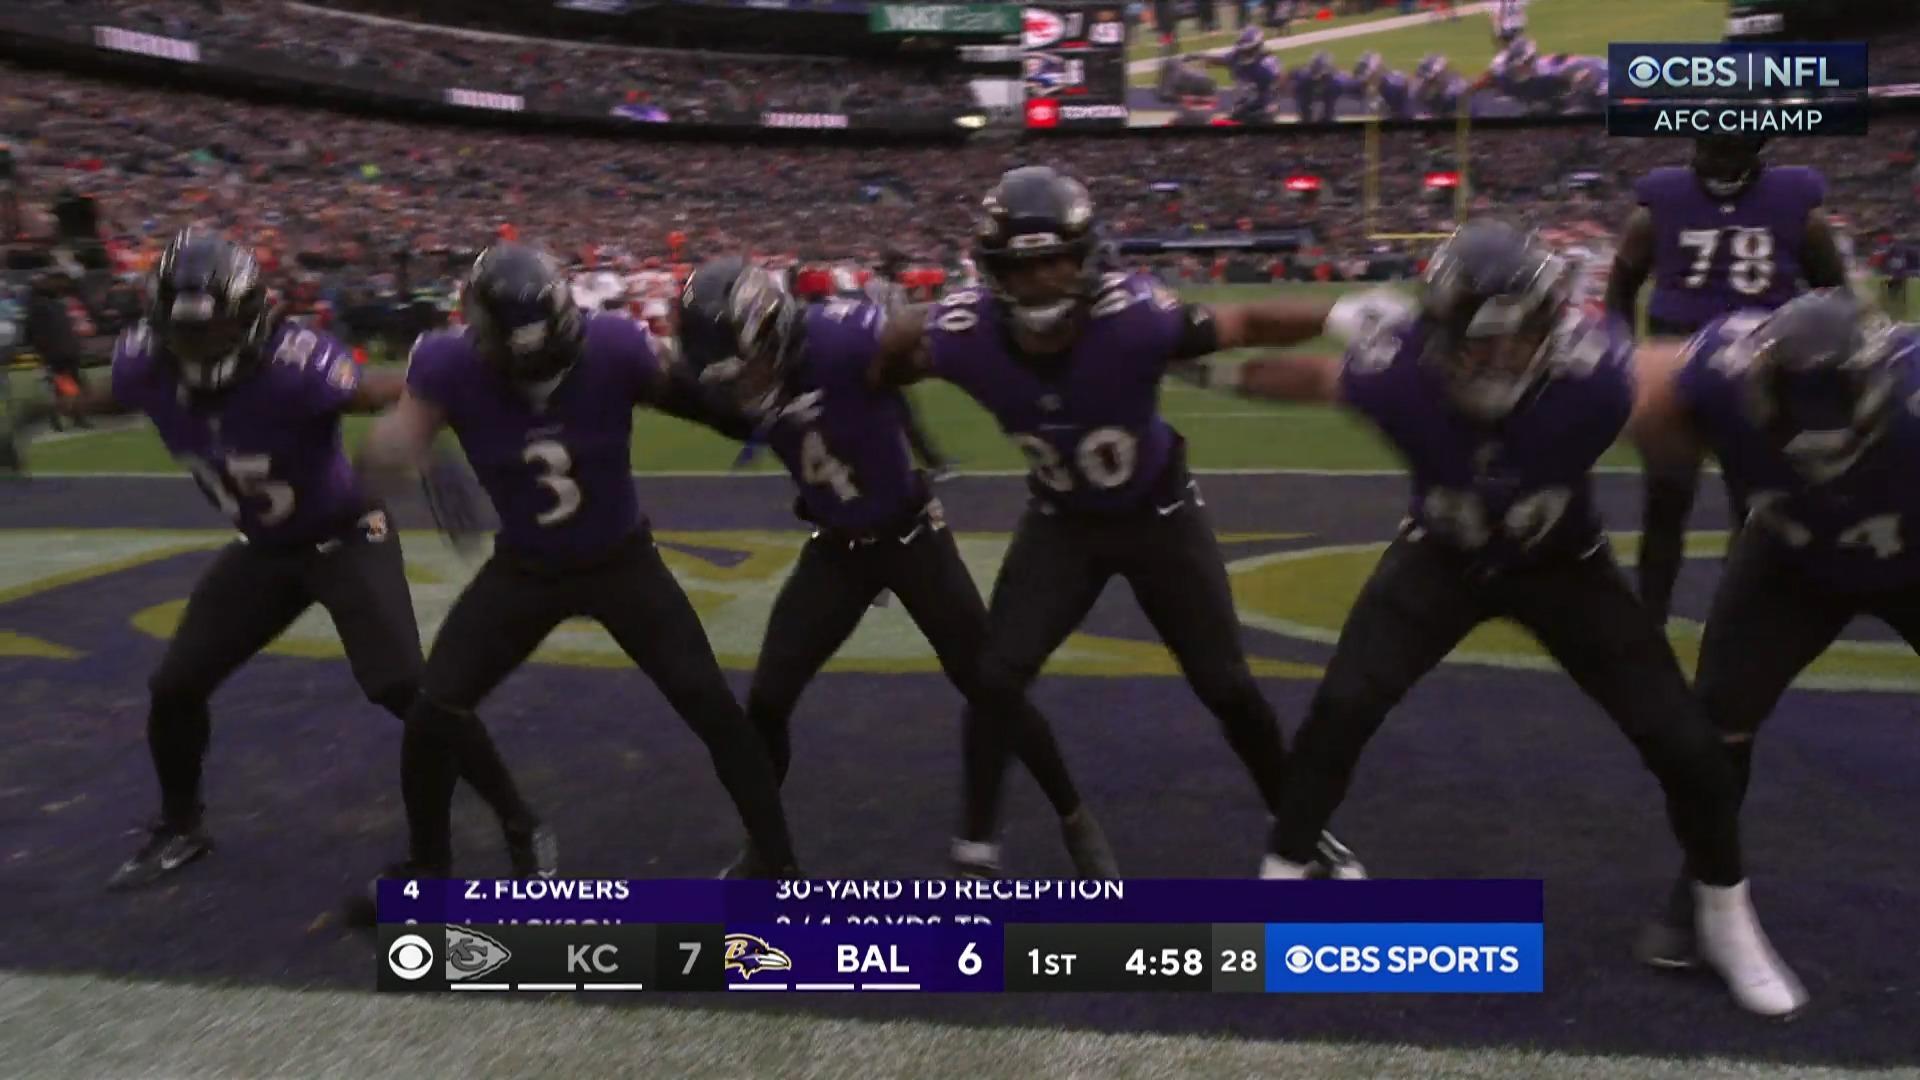 ¡Lamar Jackson lanza una bomba para touchdown!  Los Ravens están en la zona de anotación.